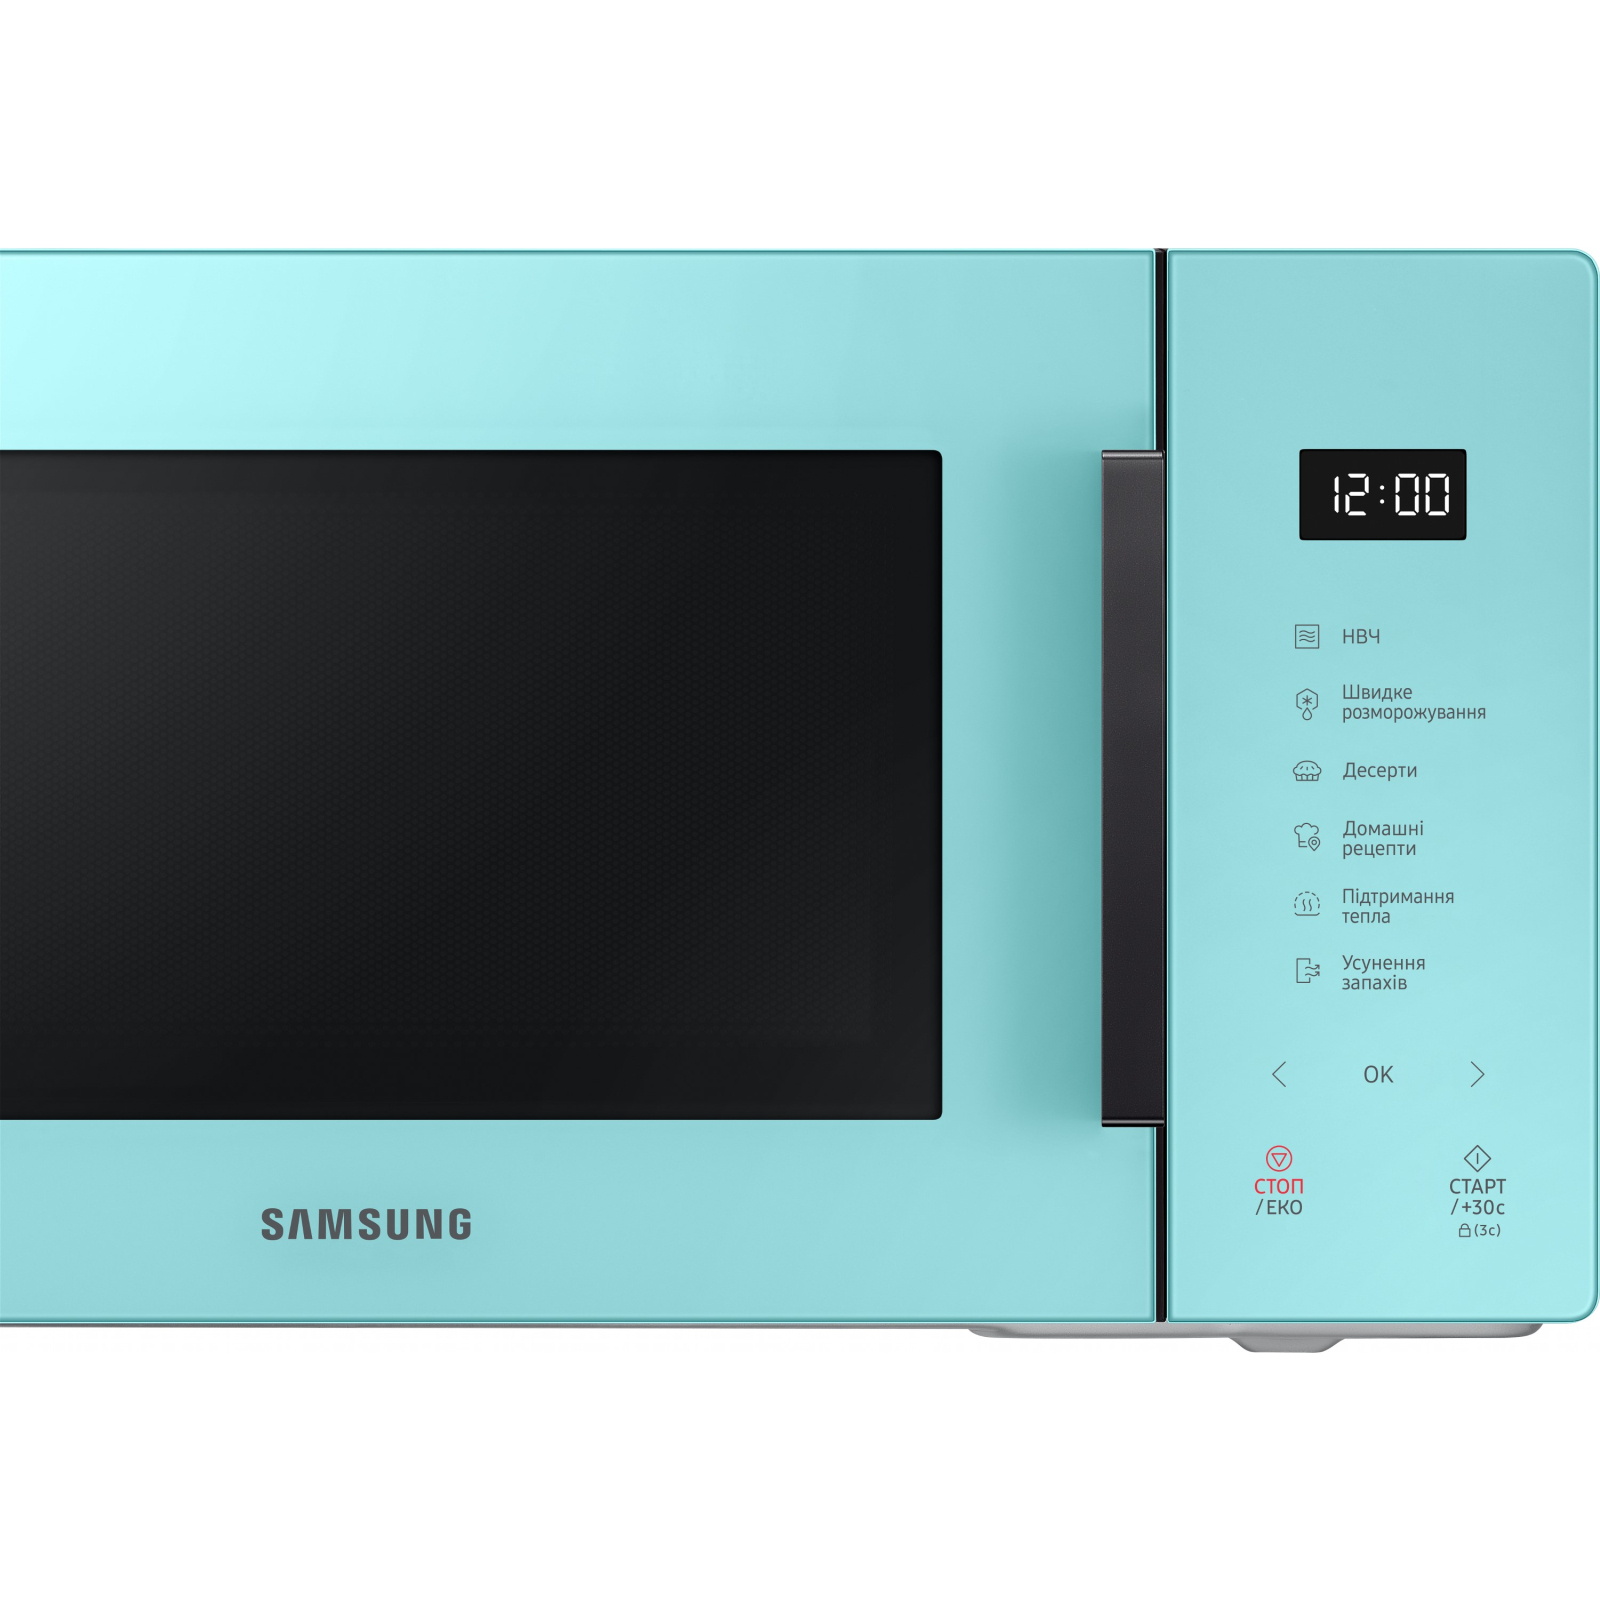 Микроволновая печь Samsung MS23T5018AN/UA изображение 4